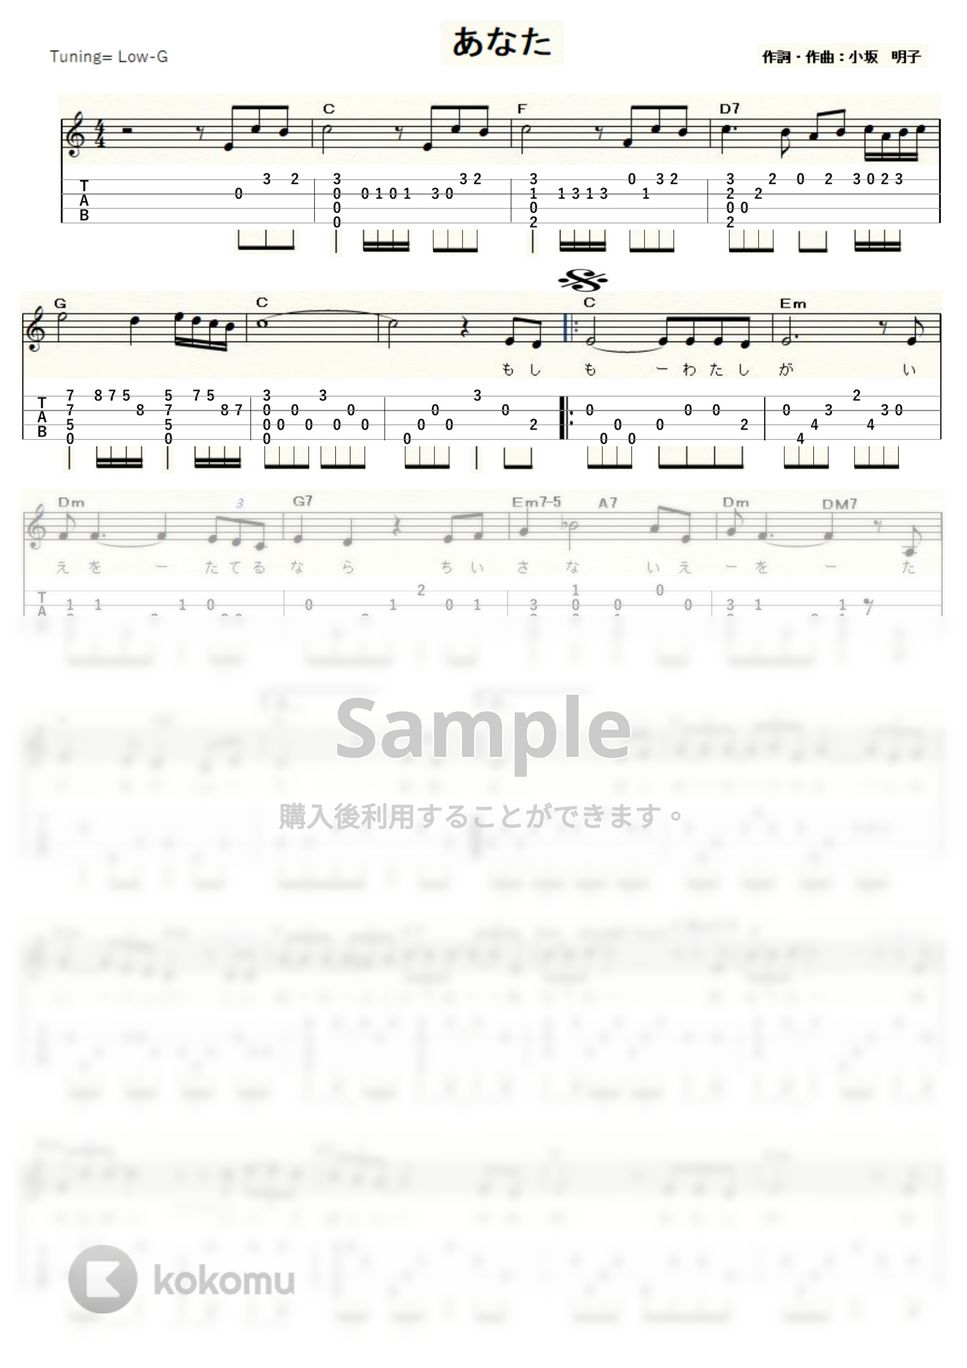 小坂明子 - あなた (Low-G) by ukulelepapa